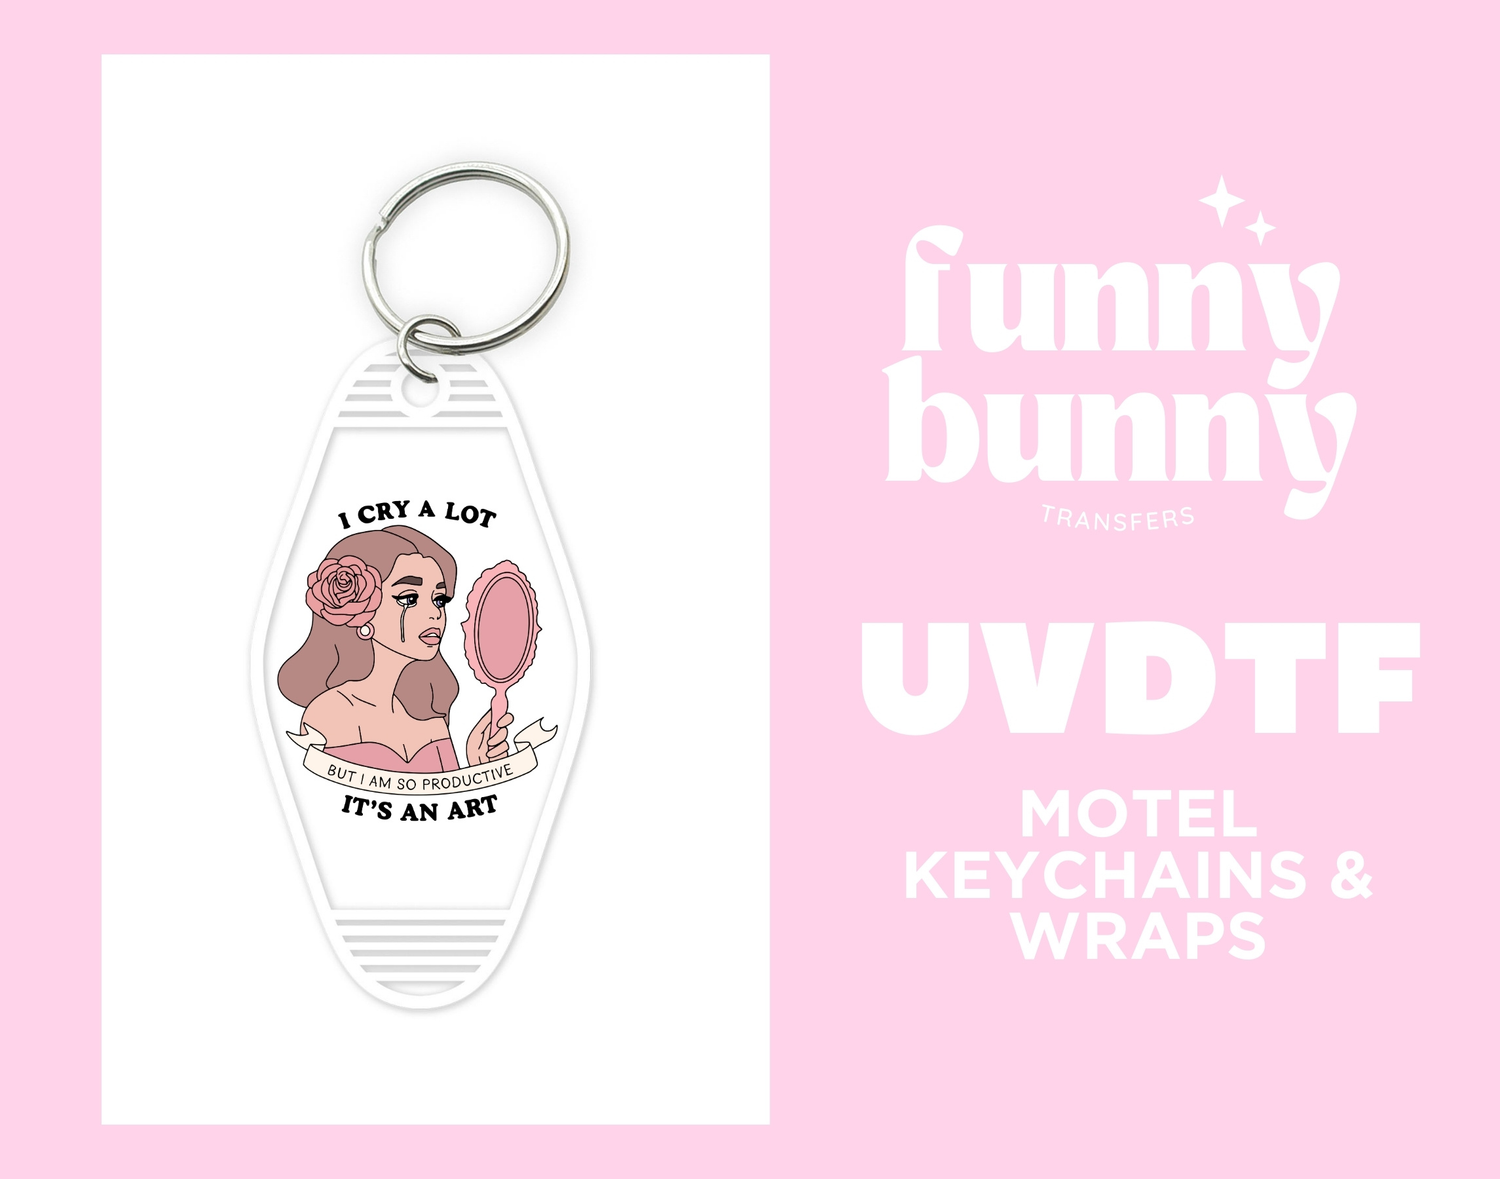 Custom UVDTF – Funny Bunny Transfers